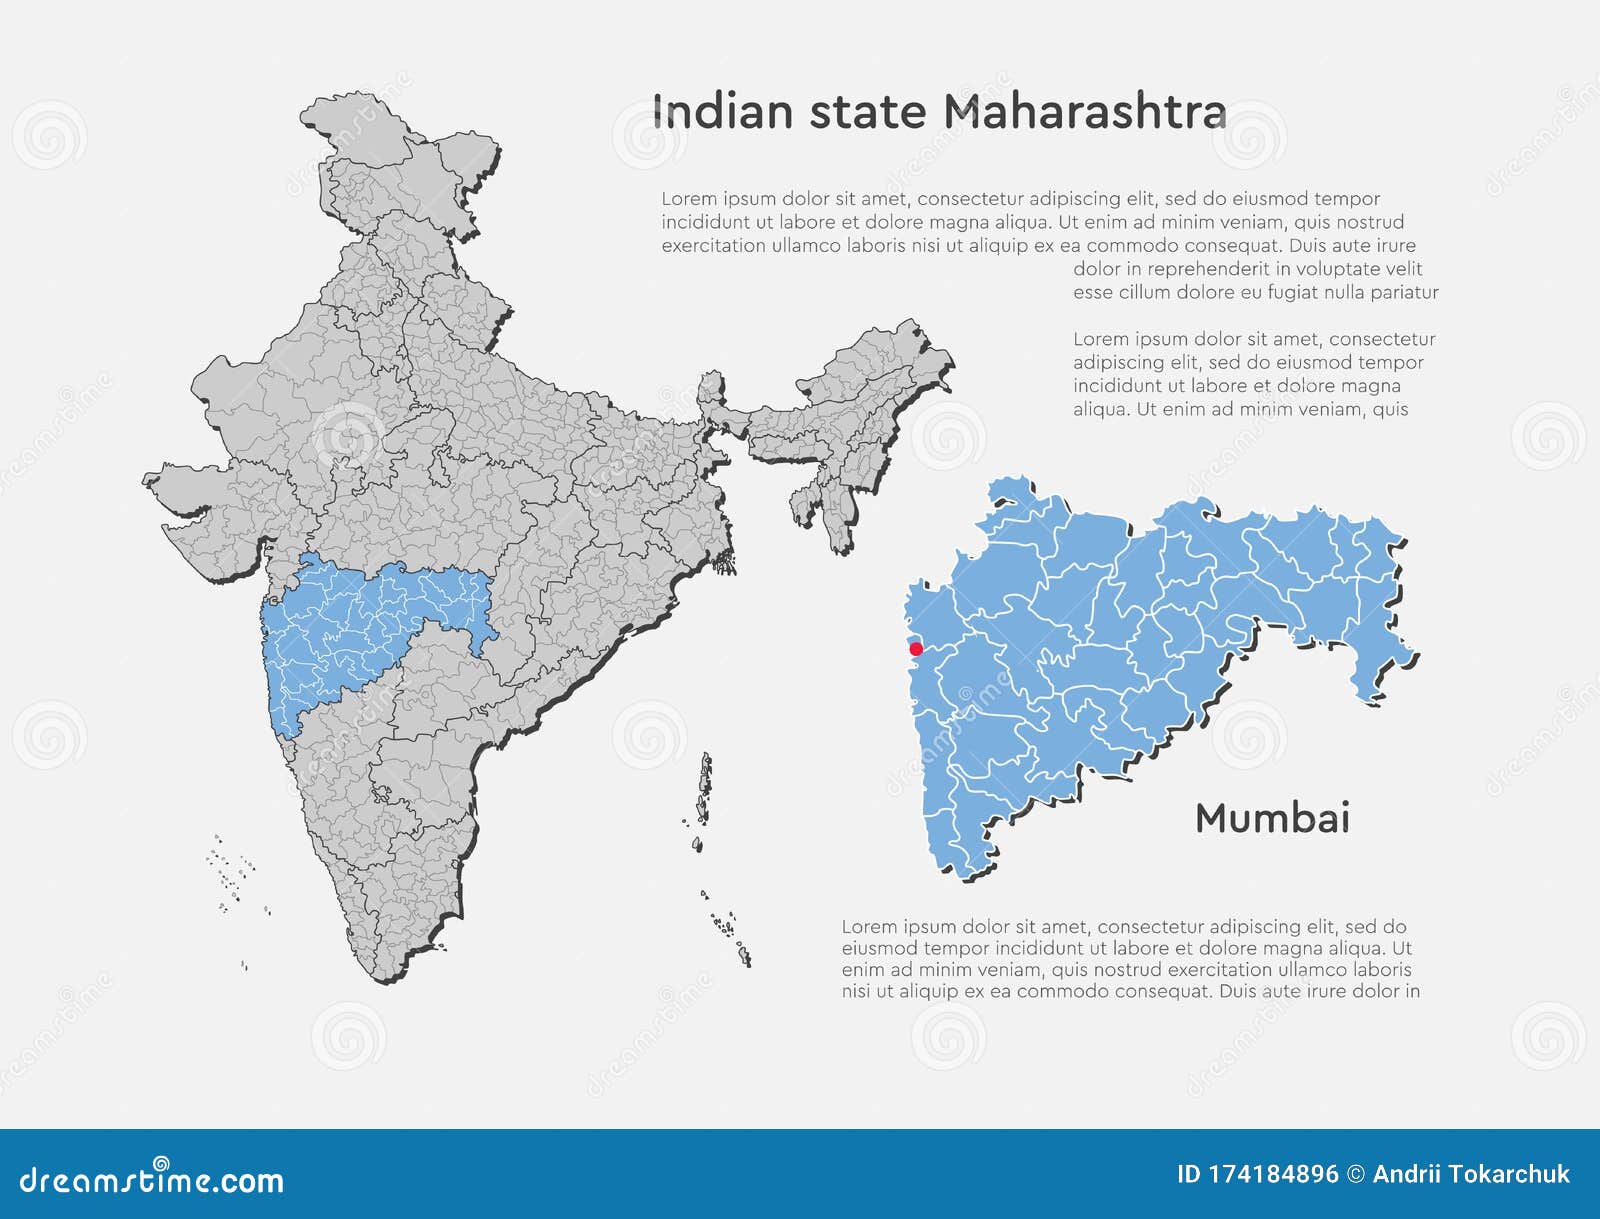 How to draw Maharashtra map SAAD - YouTube